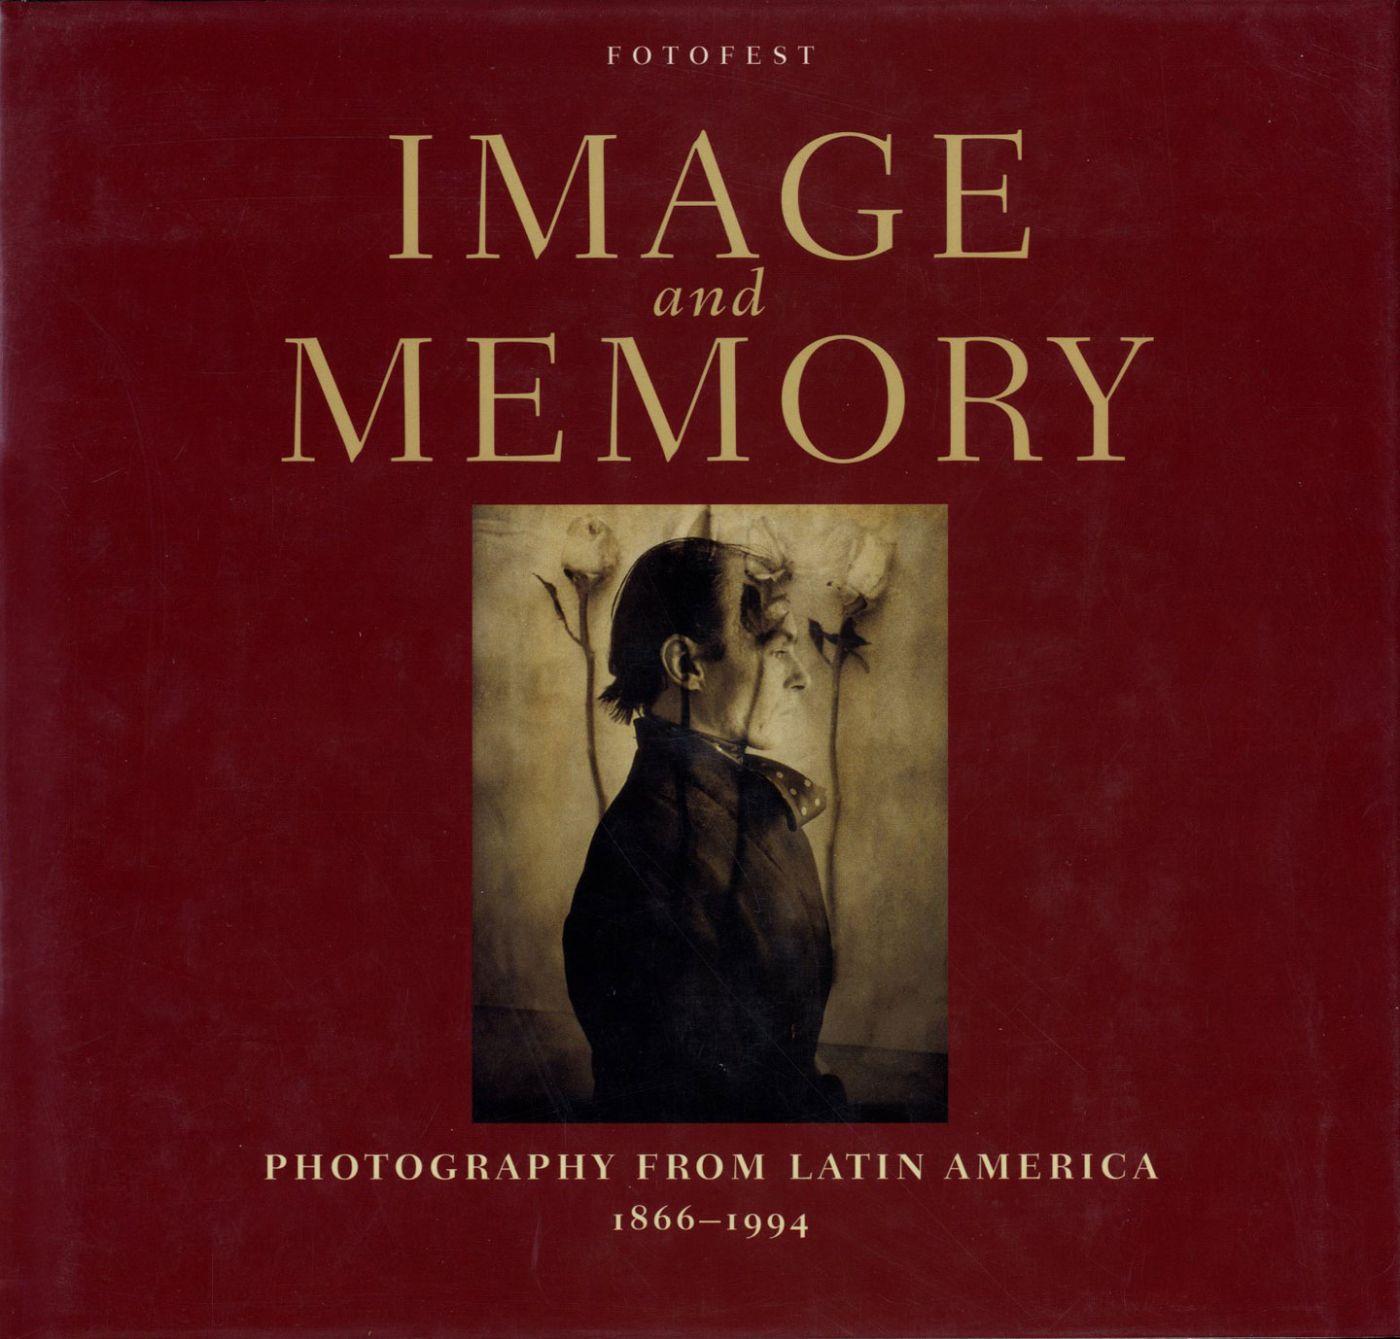 Image and Memory: Photography from Latin America 1866-1994 - WATRISS, Wendy, KOSSOY, Boris, CASTRO, Fernando, ZAMORA, Lois Parkinson